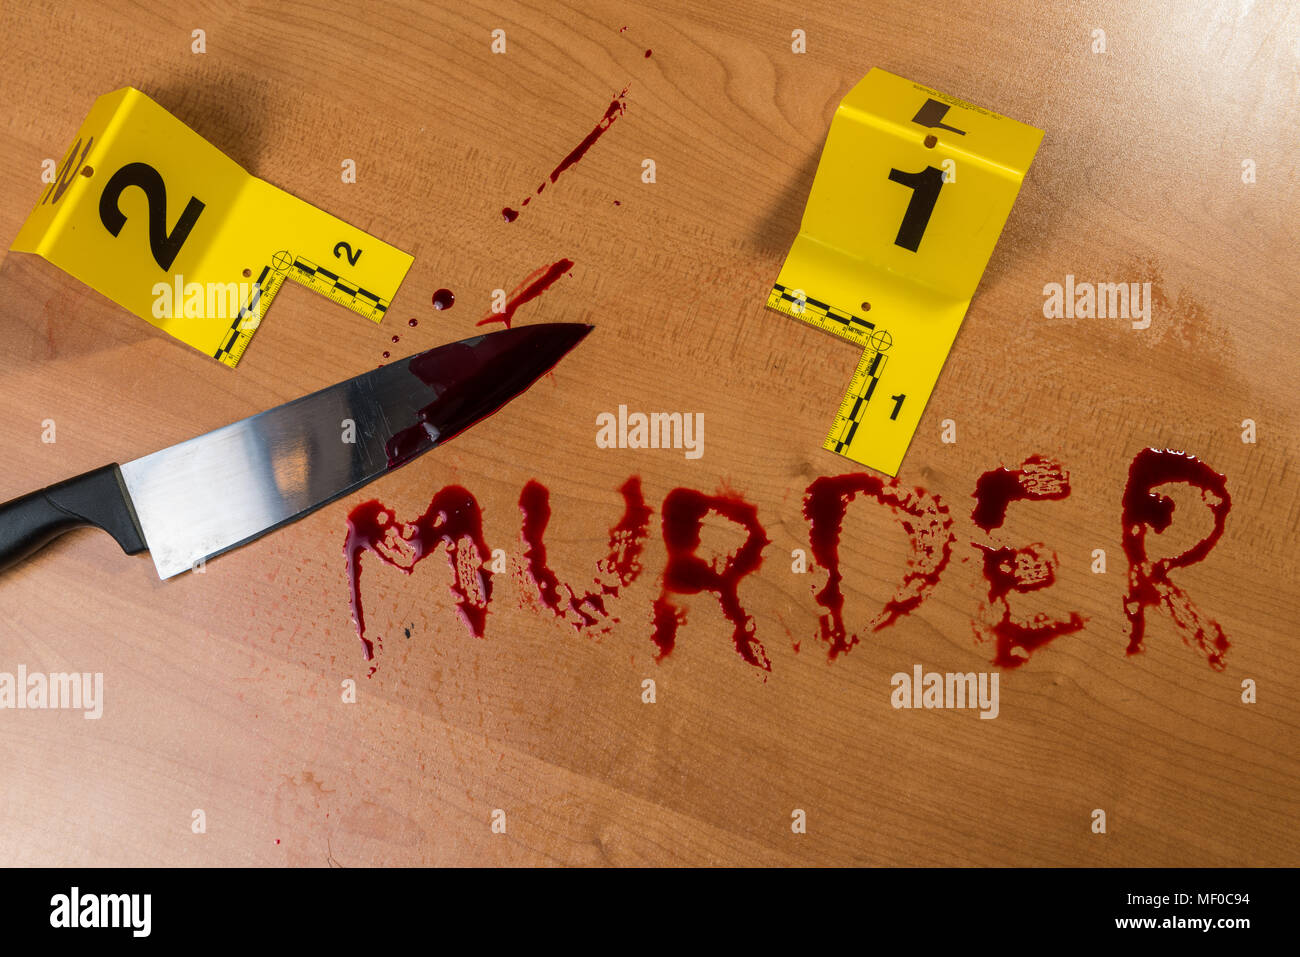 Das Wort "Mord" im Blut auf einem Holz Oberfläche neben einem blutigen Messer, sowohl durch die Beweise am Tatort Markierungen gekennzeichnet geschrieben. Stockfoto